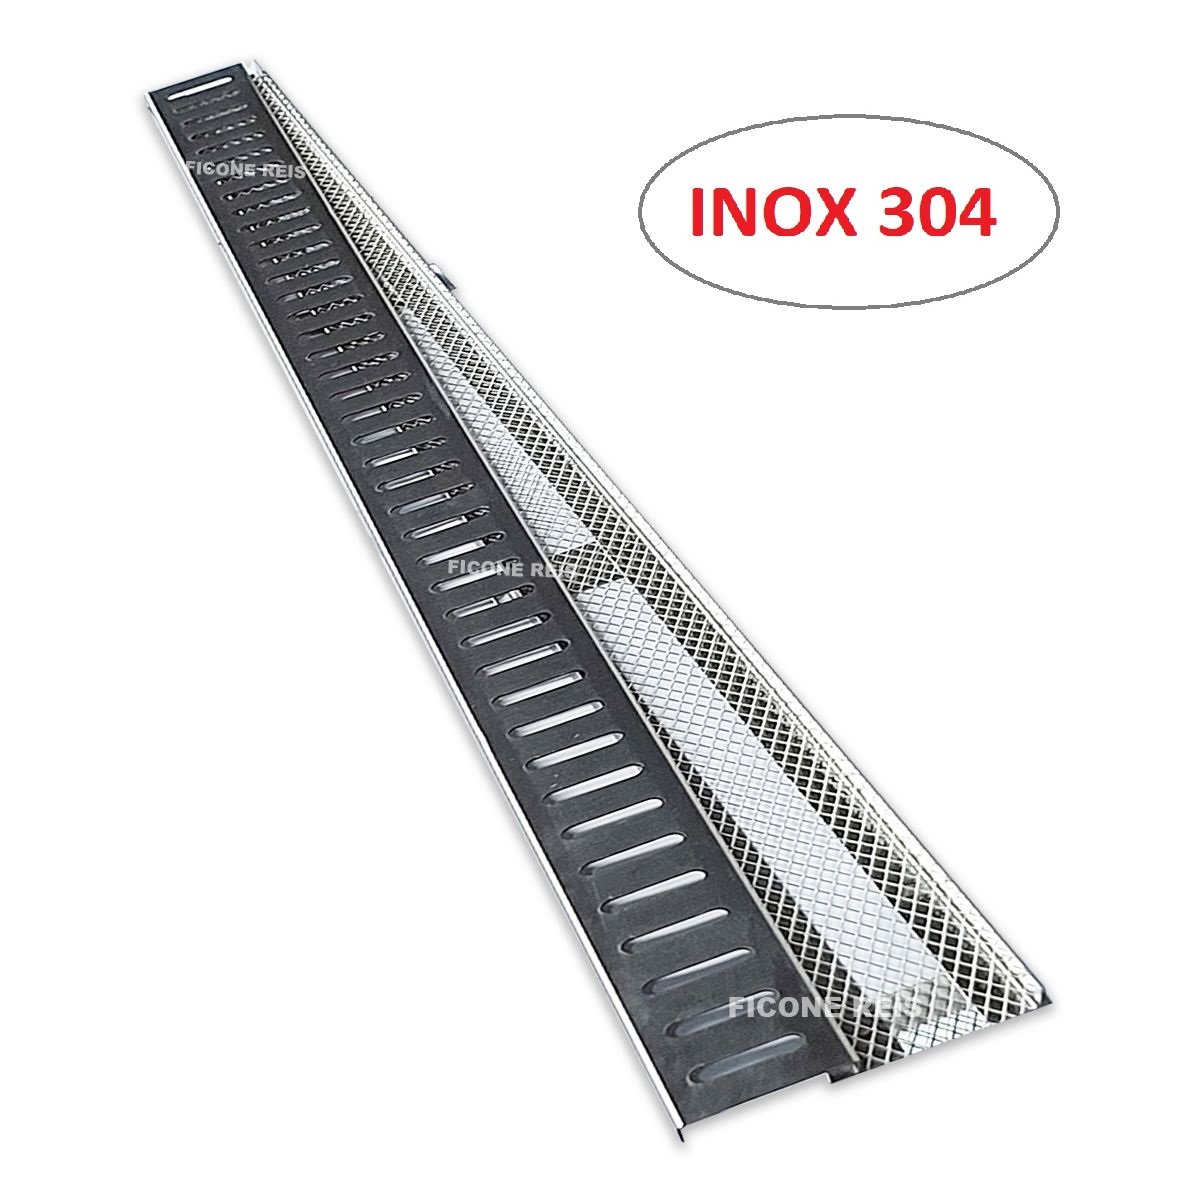 Ralo Linear 5cm x 50cm Inox 304 com suporte e Tela Anti Insetos Borda de Piscina Ficone Reis